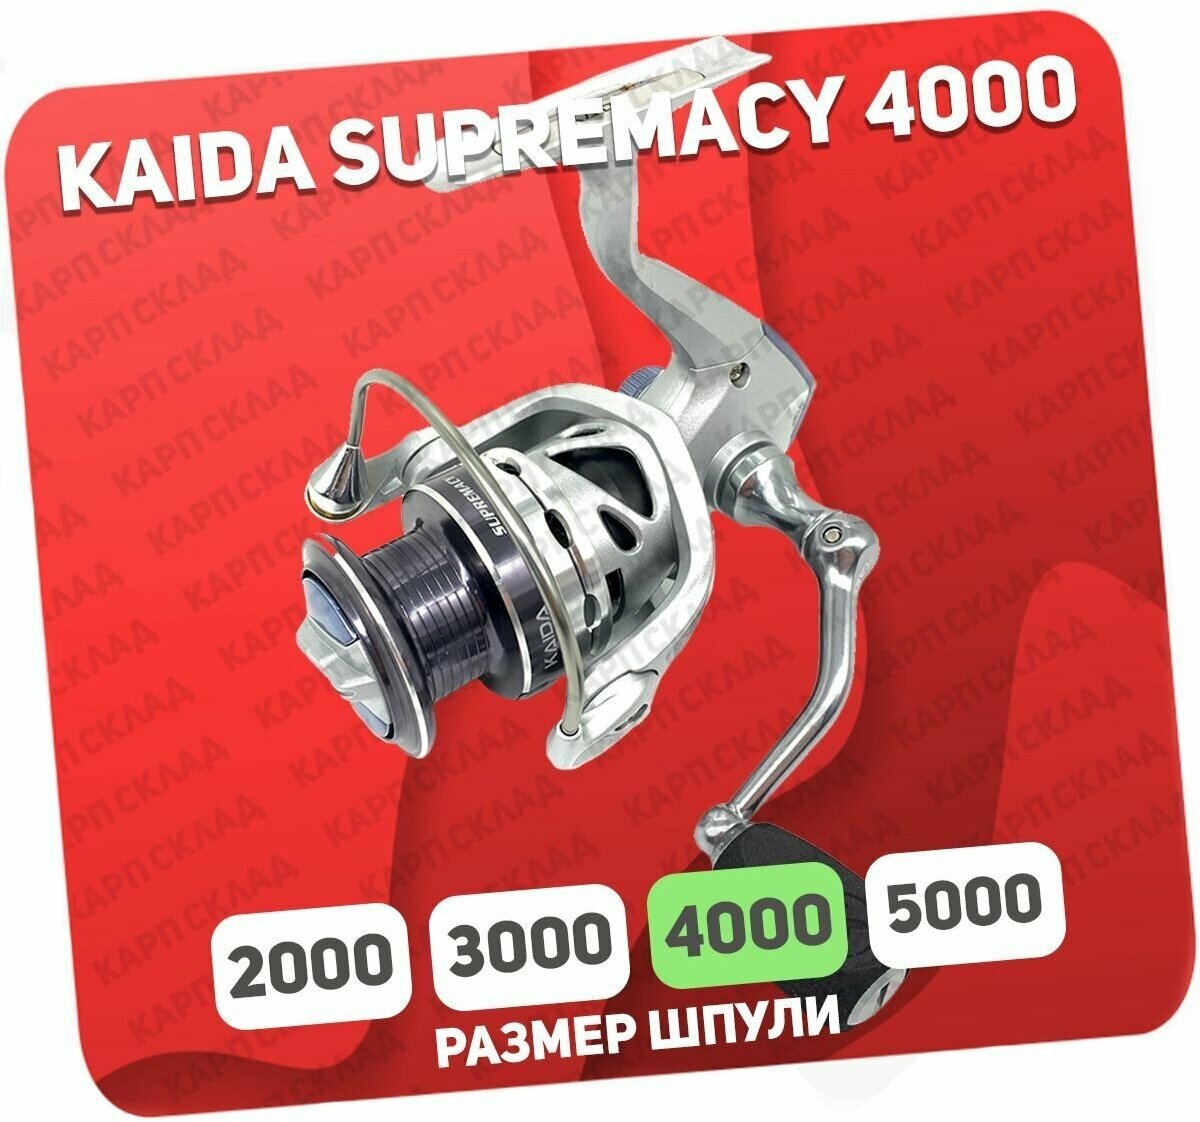 Катушка рыболовная Kaida SUPREMACY 4000F 7+1 подшипник безынерционная